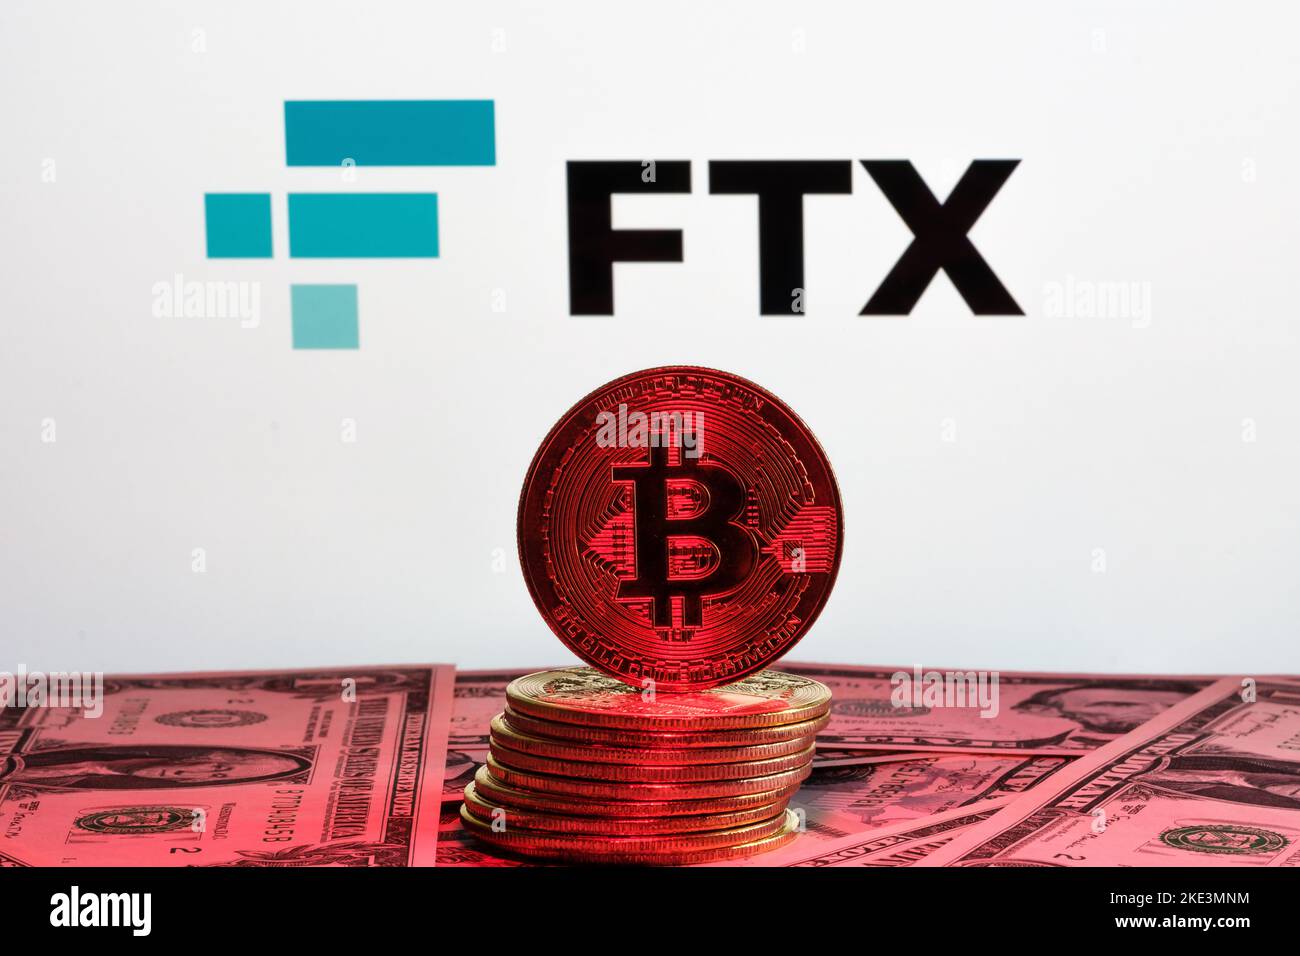 FTX crypto-monnaie Exchange faillite concept. Logo FTX affiché et pile de jetons bitcoin. Stafford, Royaume-Uni, 10 novembre 2022. Banque D'Images